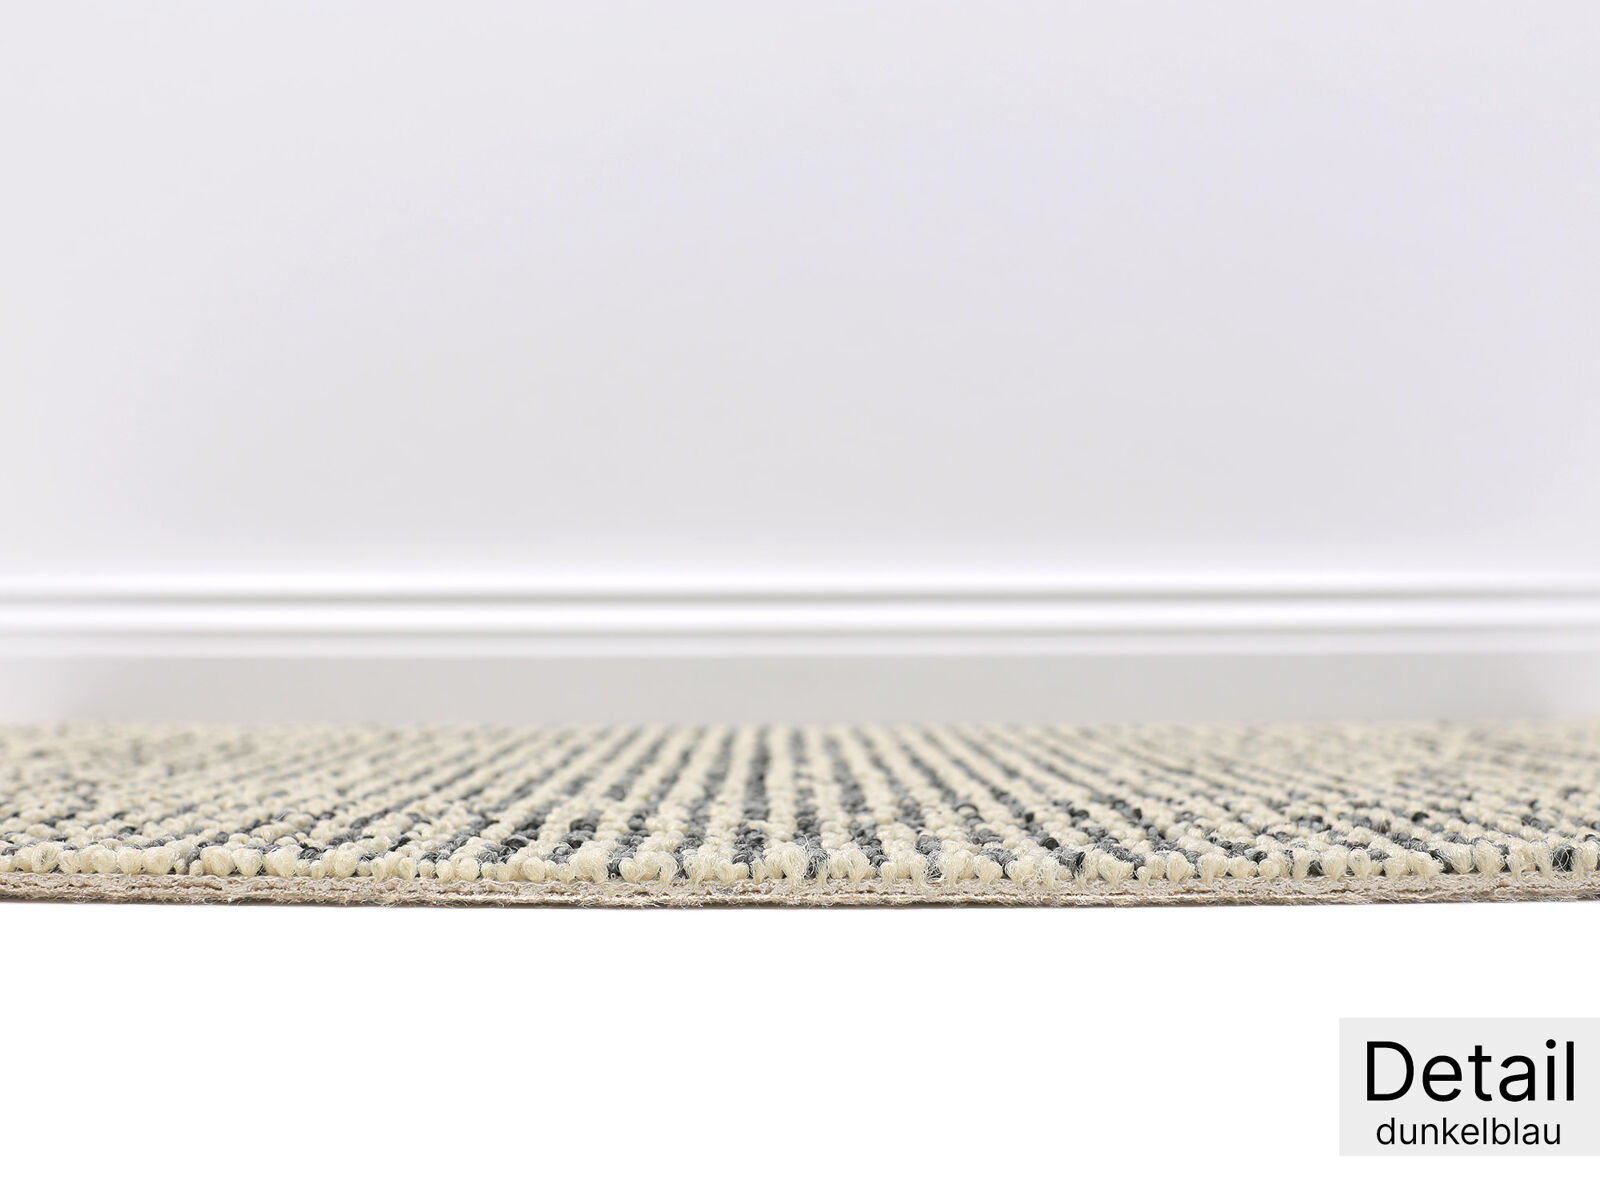 Riad Teppichboden | Texflor Rücken | 4 Farben | 400cm Breite und Raummaß